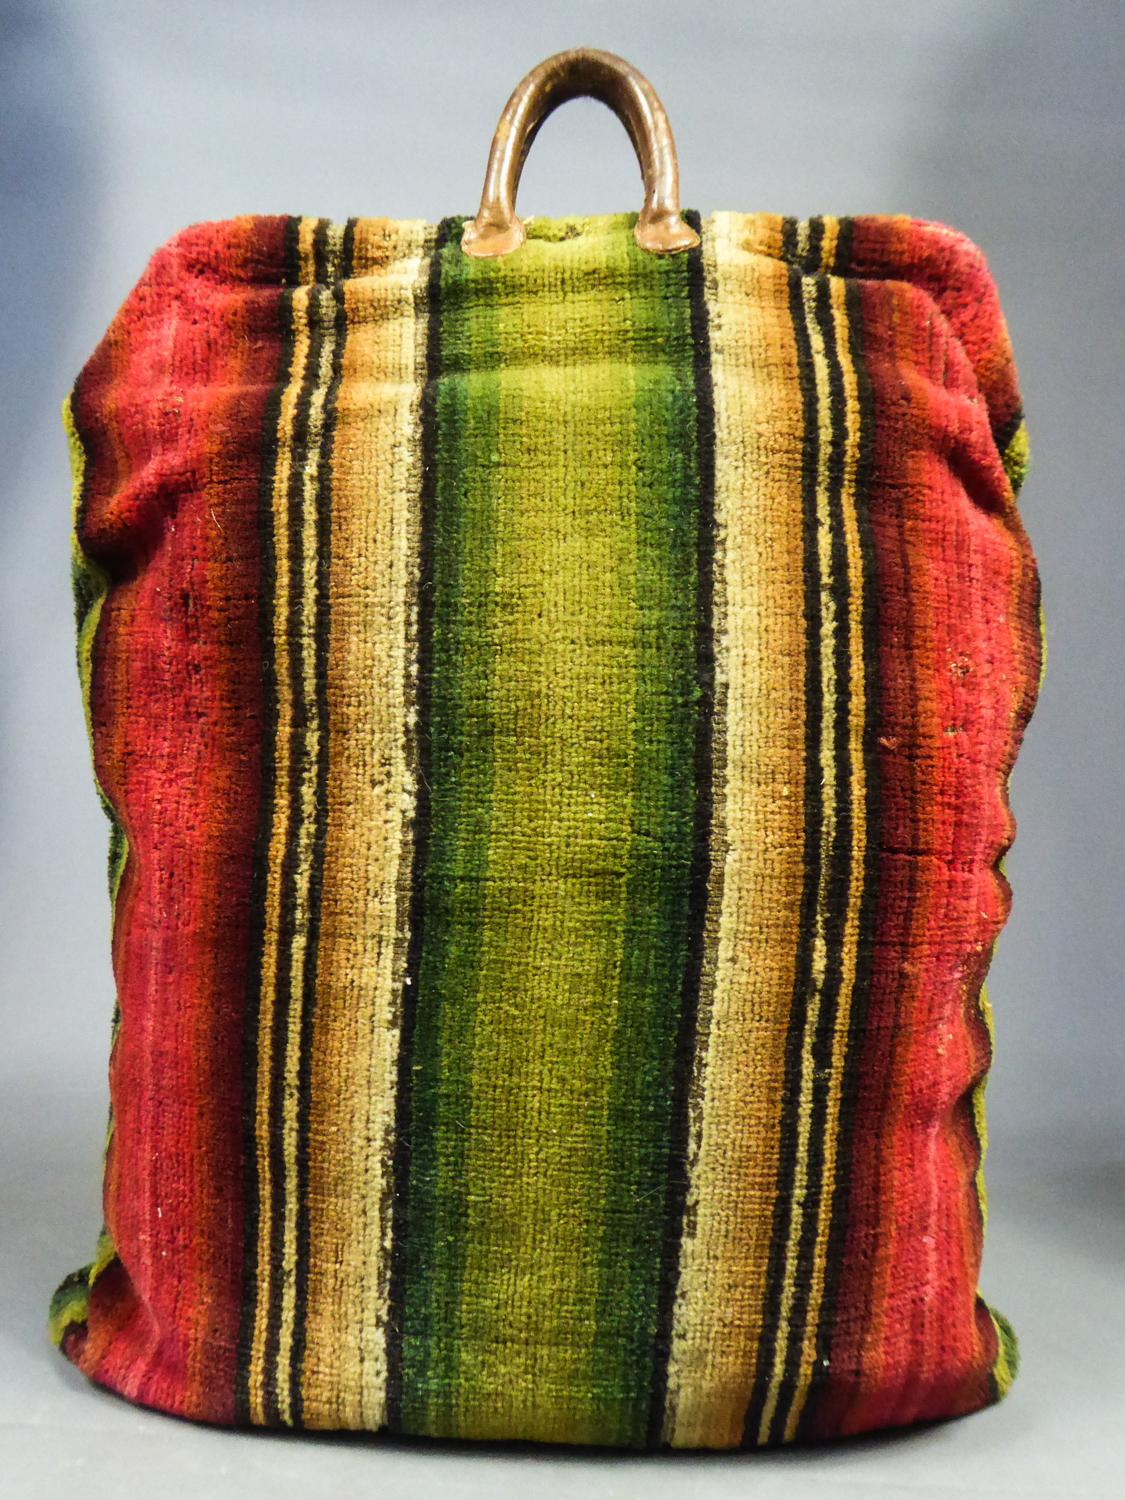 Sac de voyage en tapisserie de laine taillée et cuir - France, fin du XVIIIe siècle 6